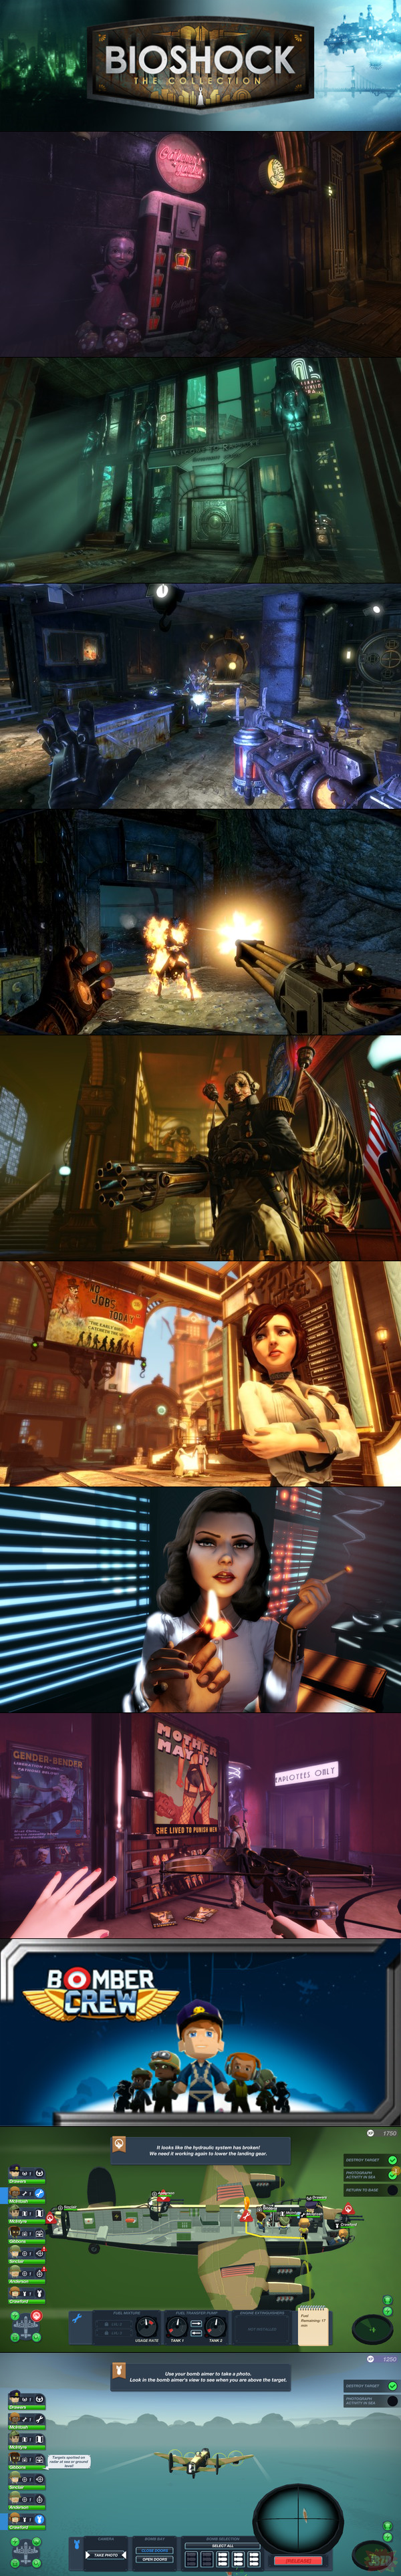 Trylogia Bioshock za darmo w Free Games Store oraz Bomber Crew za darmo na Steam